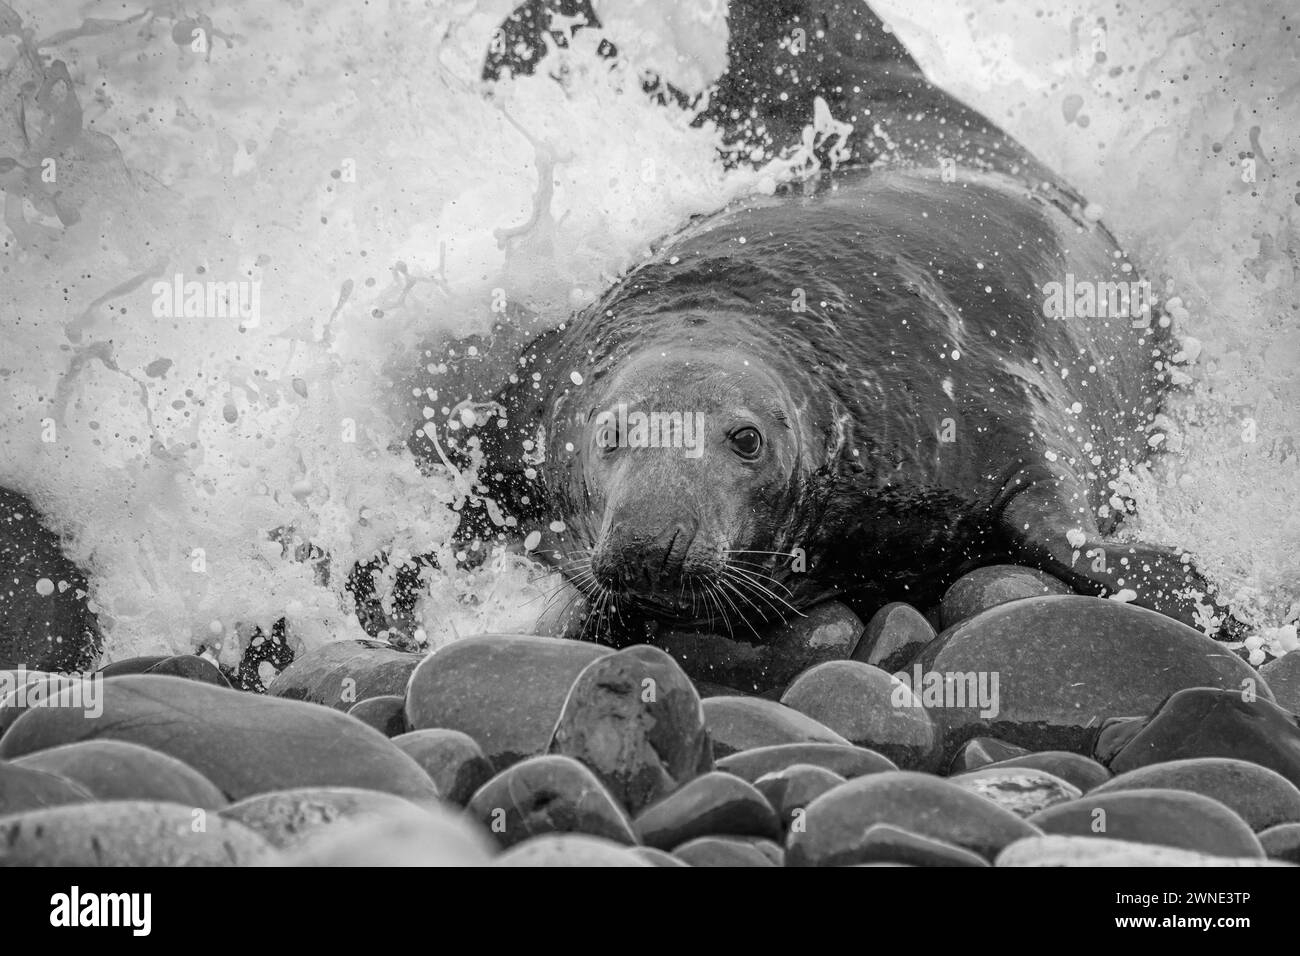 Big Bull Seal kommt an Land. Dieser Strandmeister beherrschte die Paarungsrechte an einem Strand in Berwickshire, Schottland, Großbritannien. Stockfoto